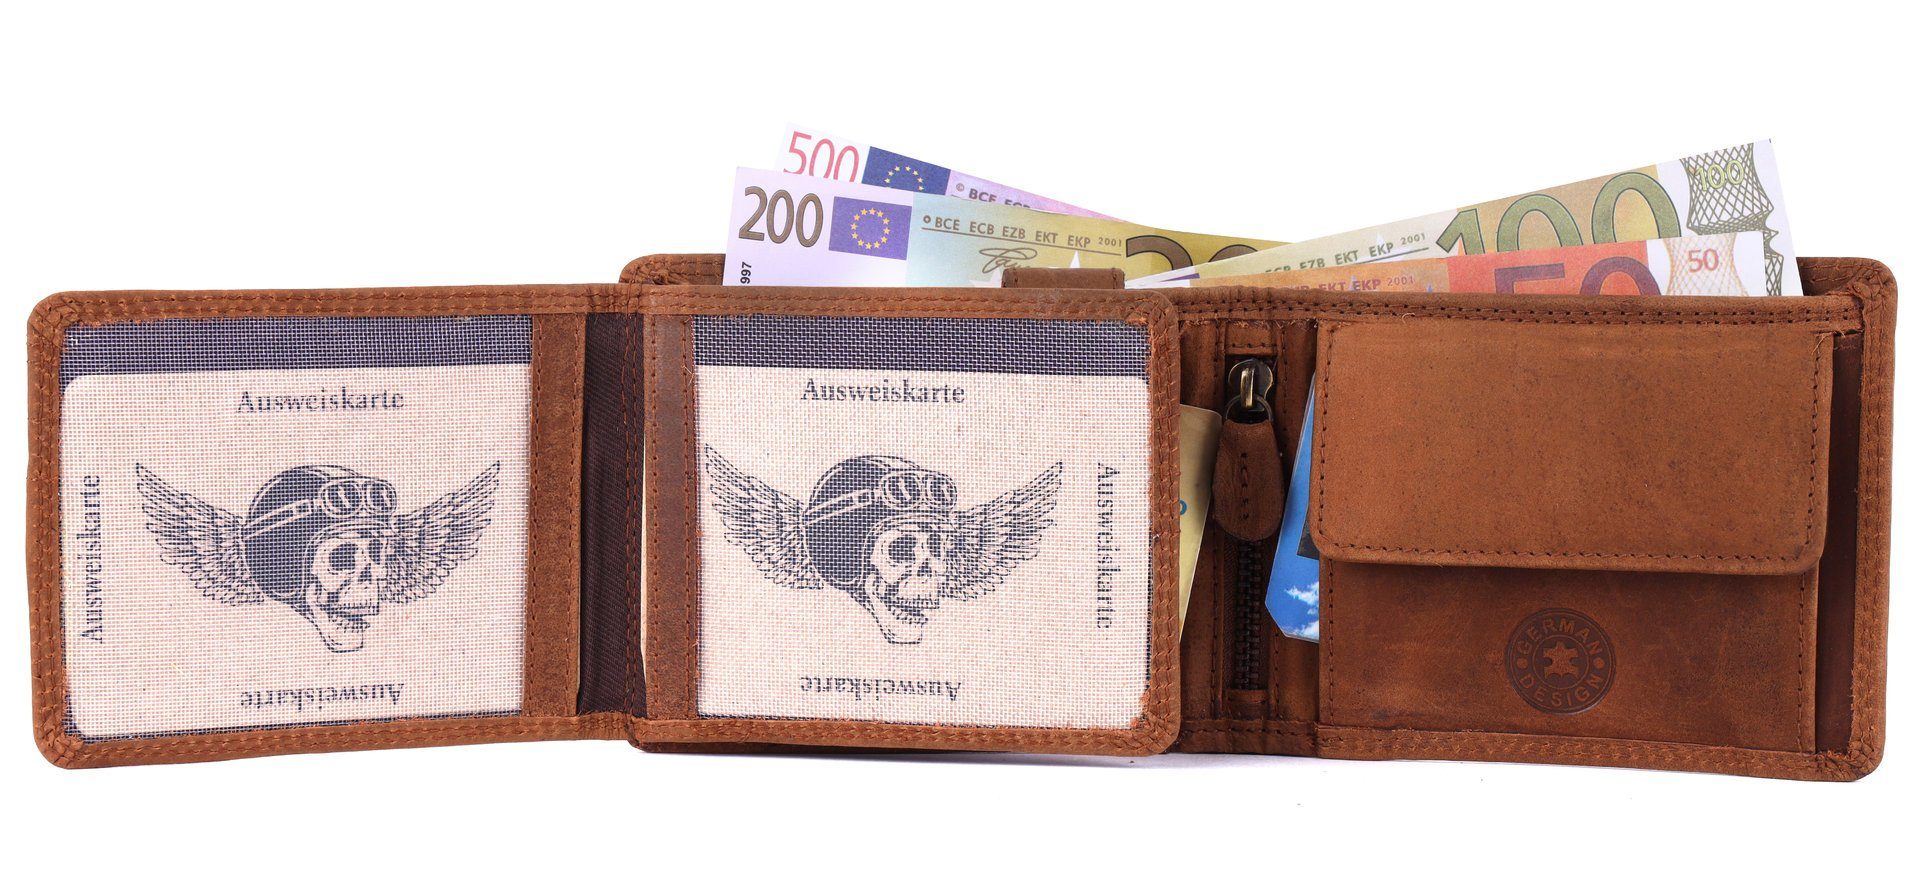 SHG Geldbörse Herren Leder Männerbörse Münzfach Schutz mit RFID Börse Brieftasche Lederbörse Büffelleder Portemonnaie